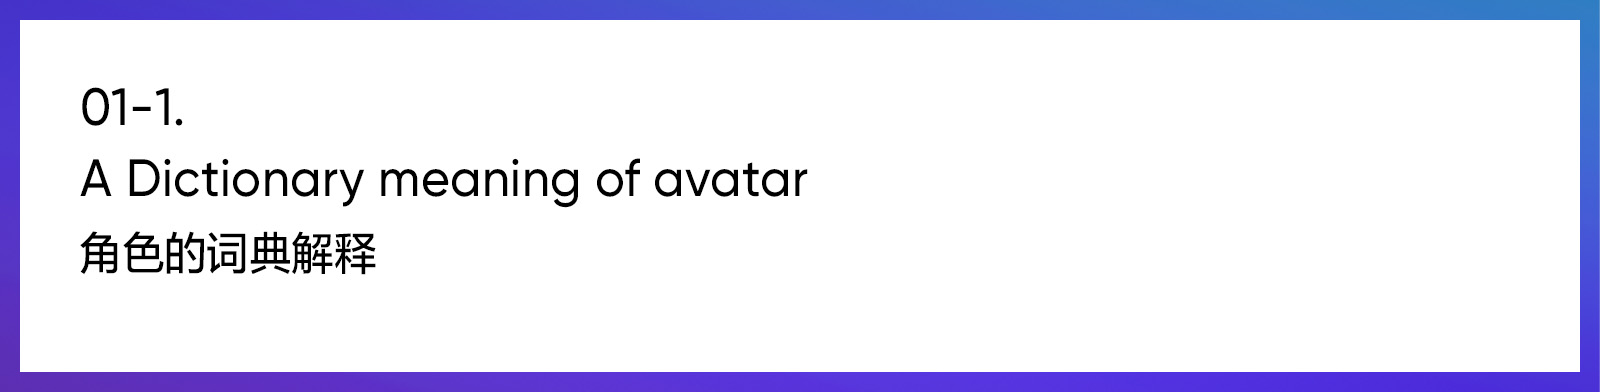 2019-2020 游戏或卡通角色 Avatar角色篇设计趋势总结xWLUQnpYnbRVHmmVLtVpnR9WZHY1yN5q6dISc4rLmJv